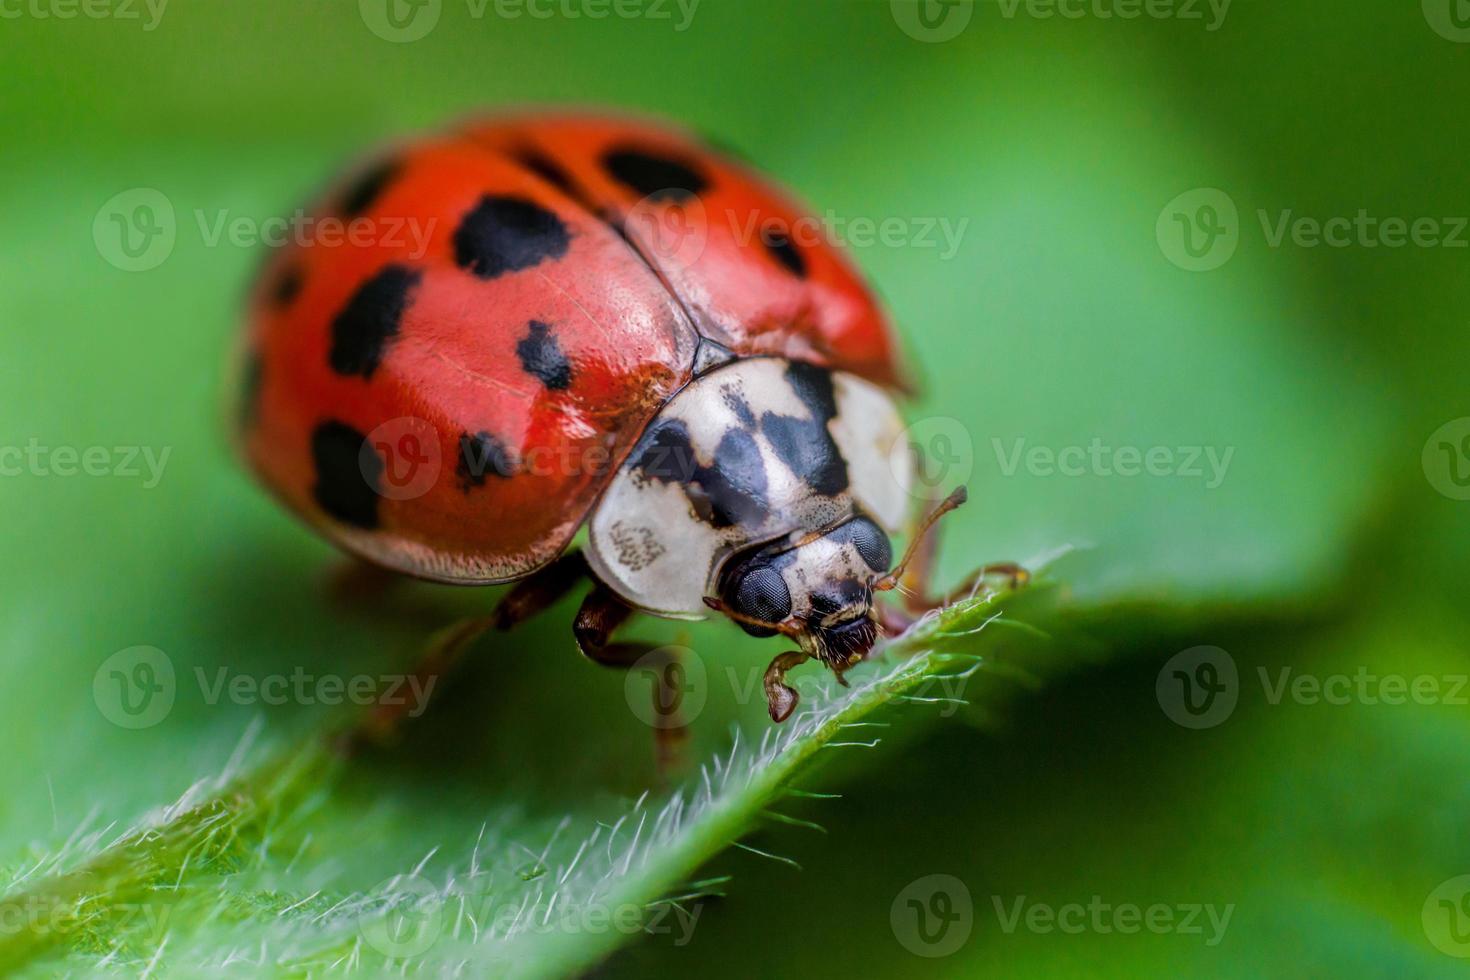 Ladybug with black eyes in macro photo